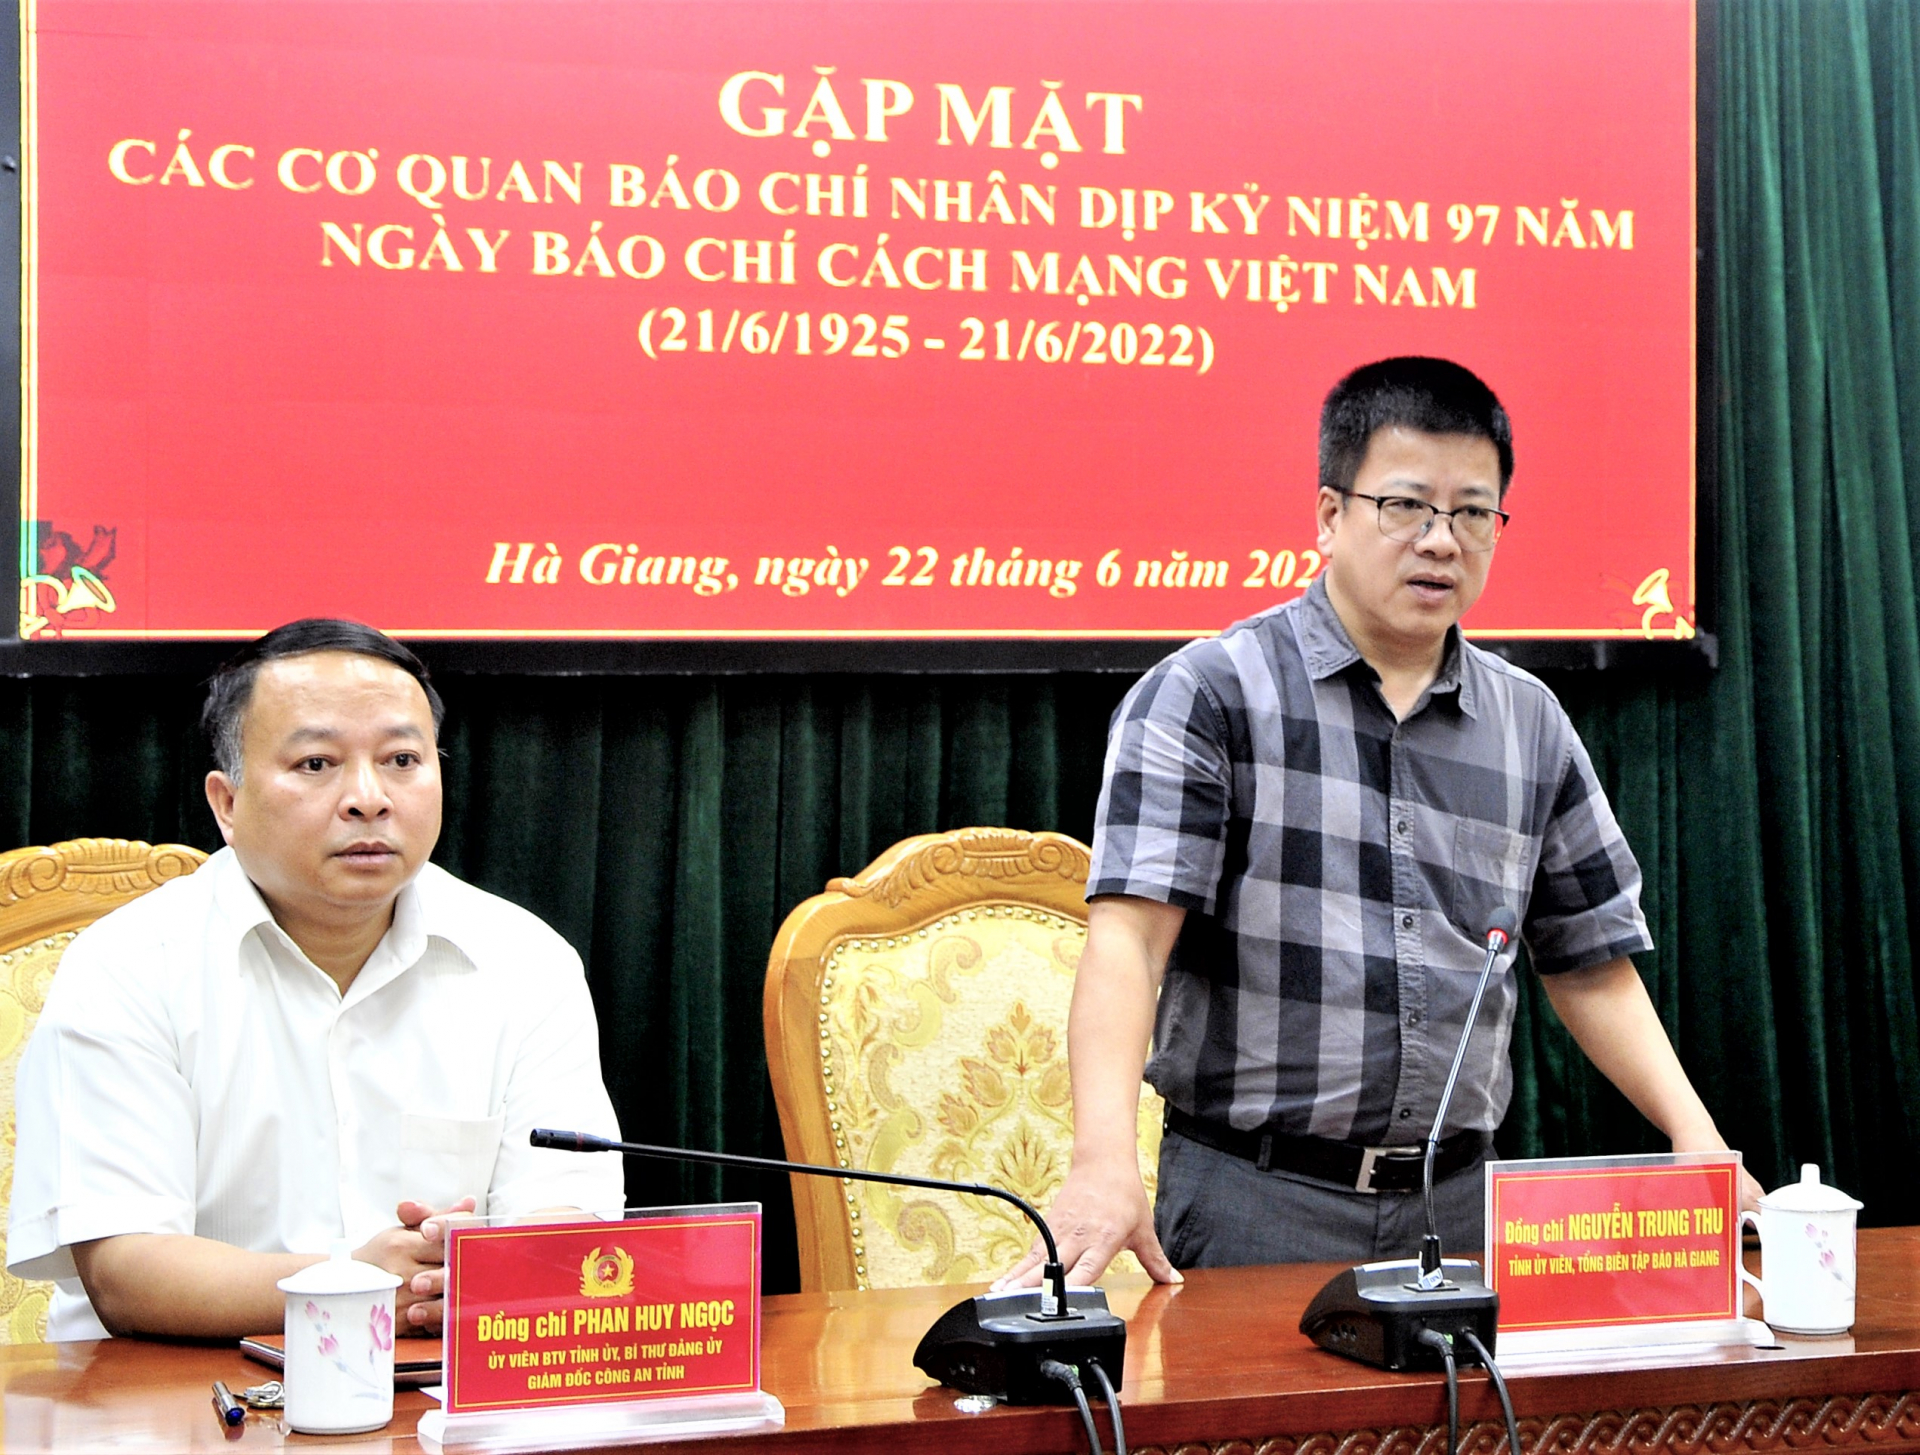 Tổng Biên tập Báo Hà Giang Nguyễn Trung Thu phát biểu cảm ơn tình cảm của Công an tỉnh.